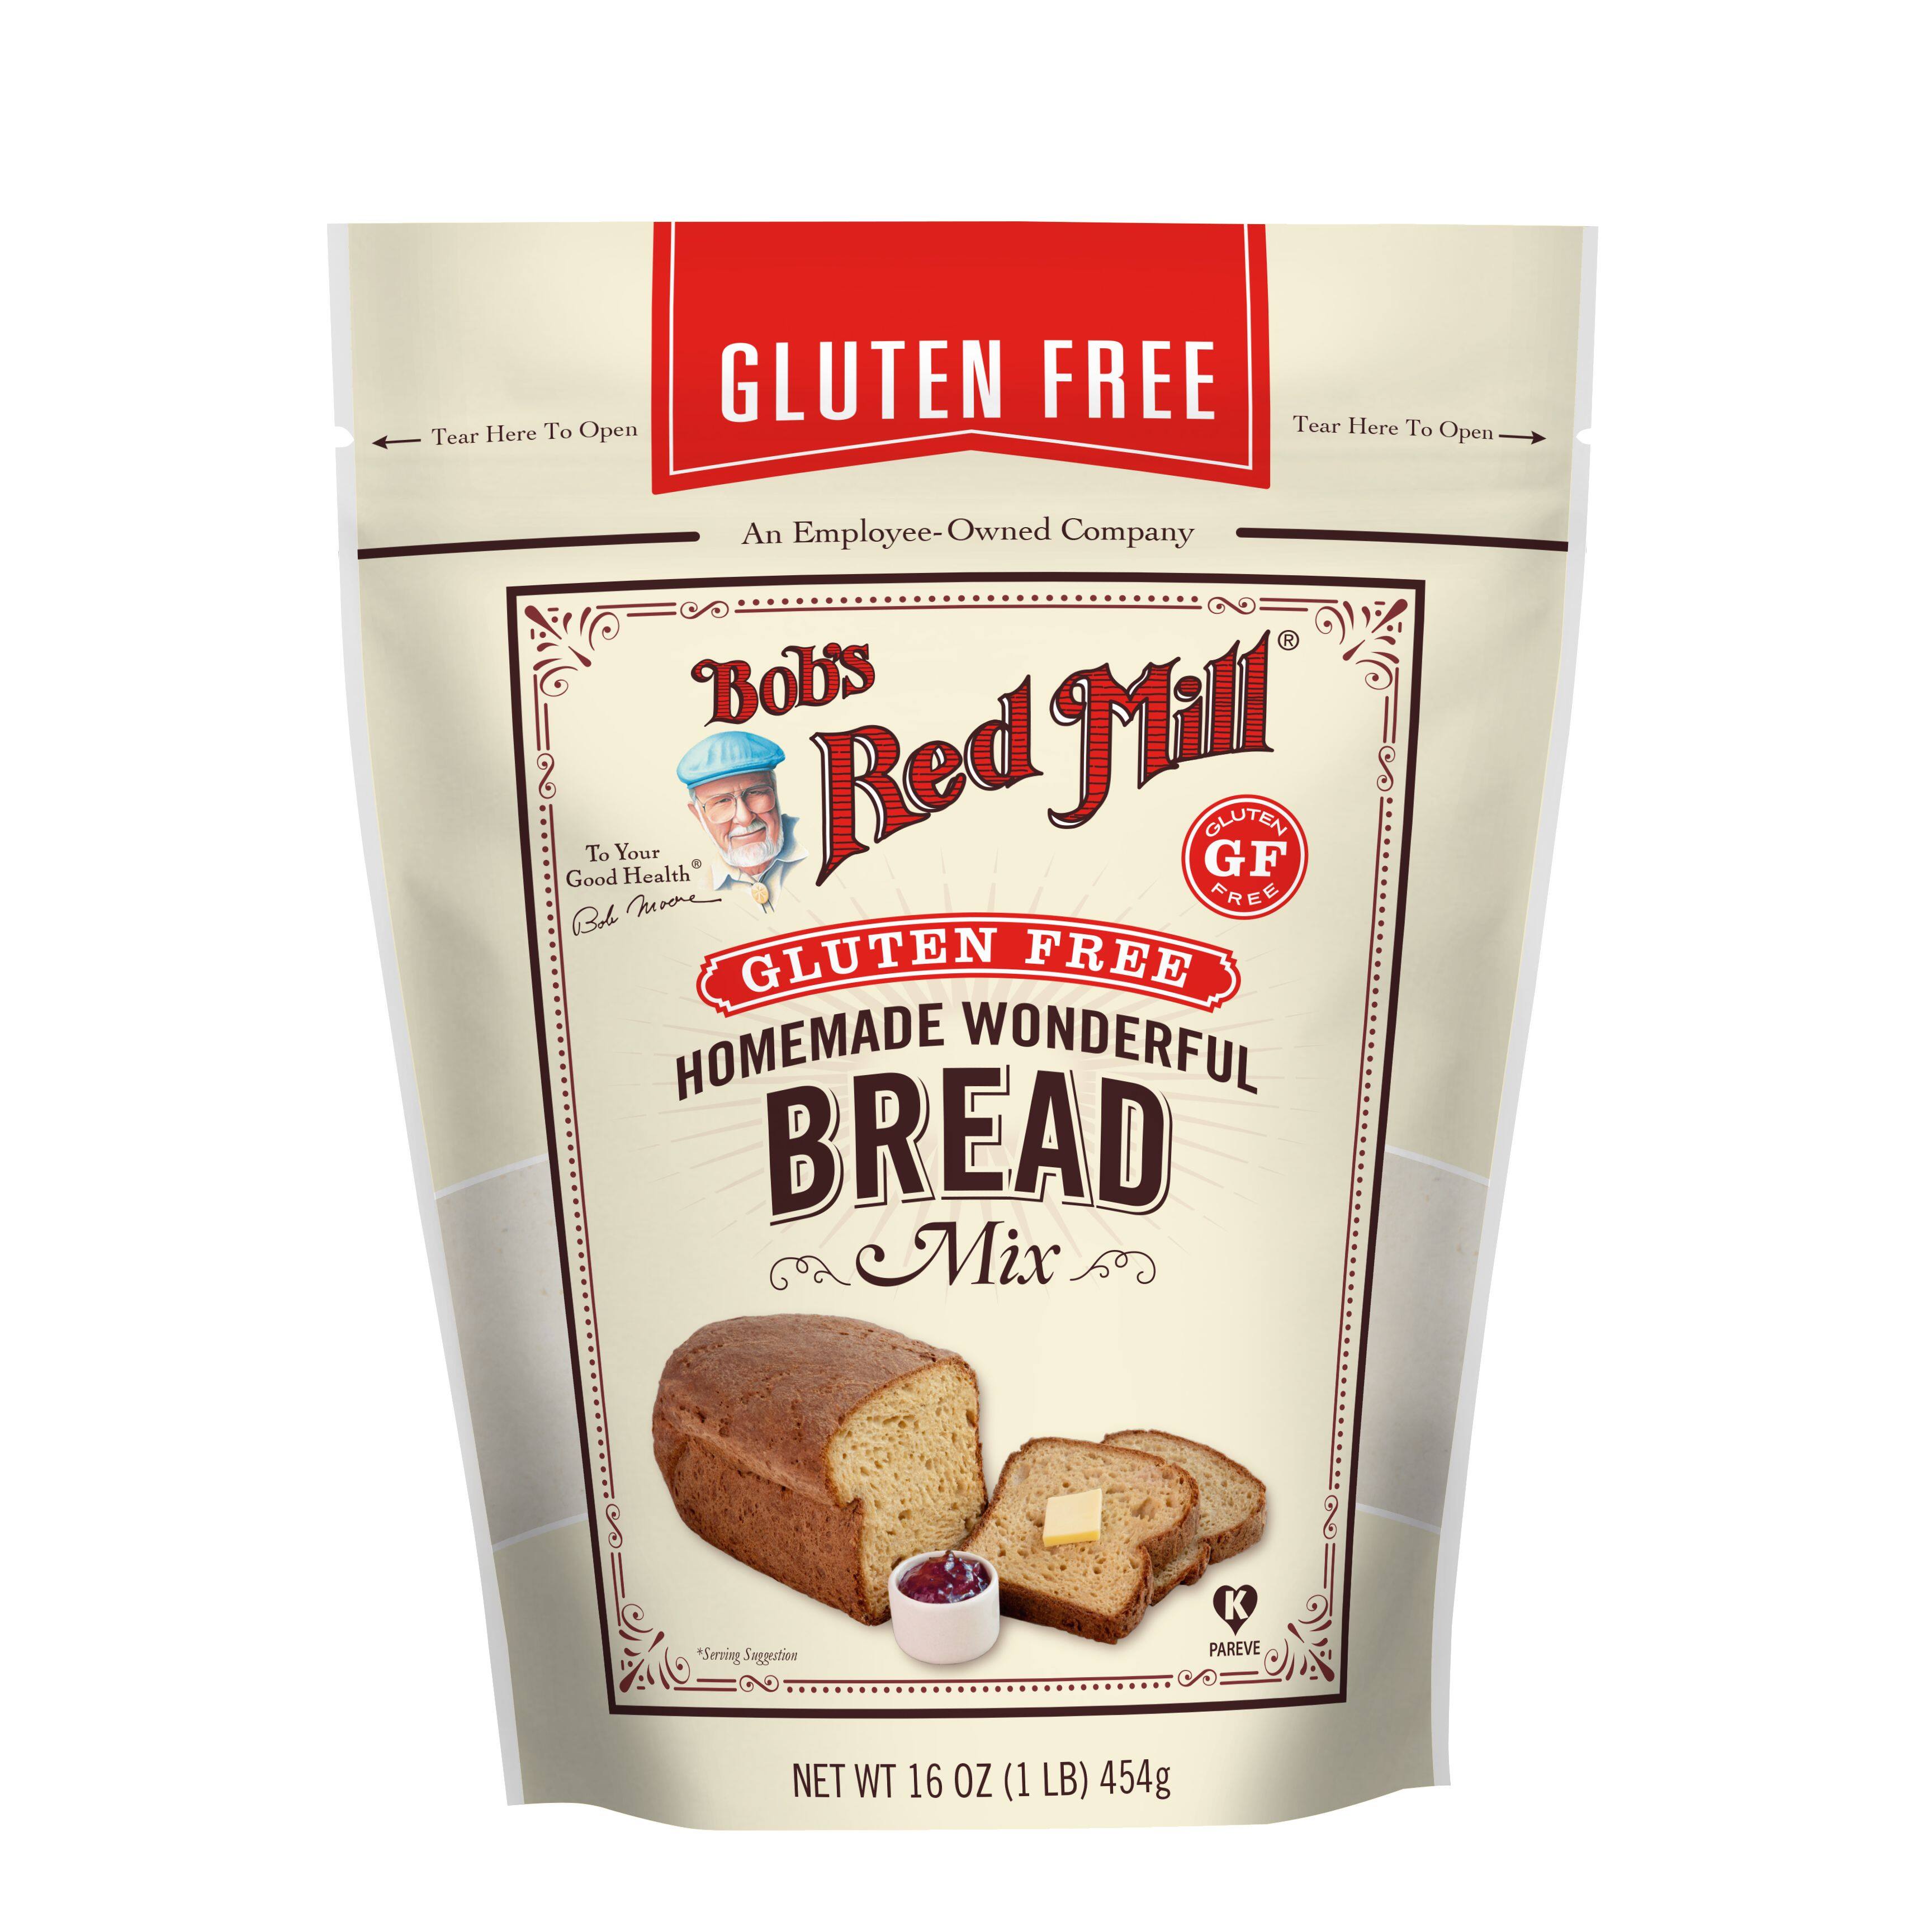 แป้งสำหรับทำขนมปัง 100% ? Gluten Free Homemade Wonderful Bread (453 gram) ?Bob's Red Mill Brand. นำเข้าจากอเมริกา ผ่านกระบวนการกำจัดกลูเตน ทำขนมปัง